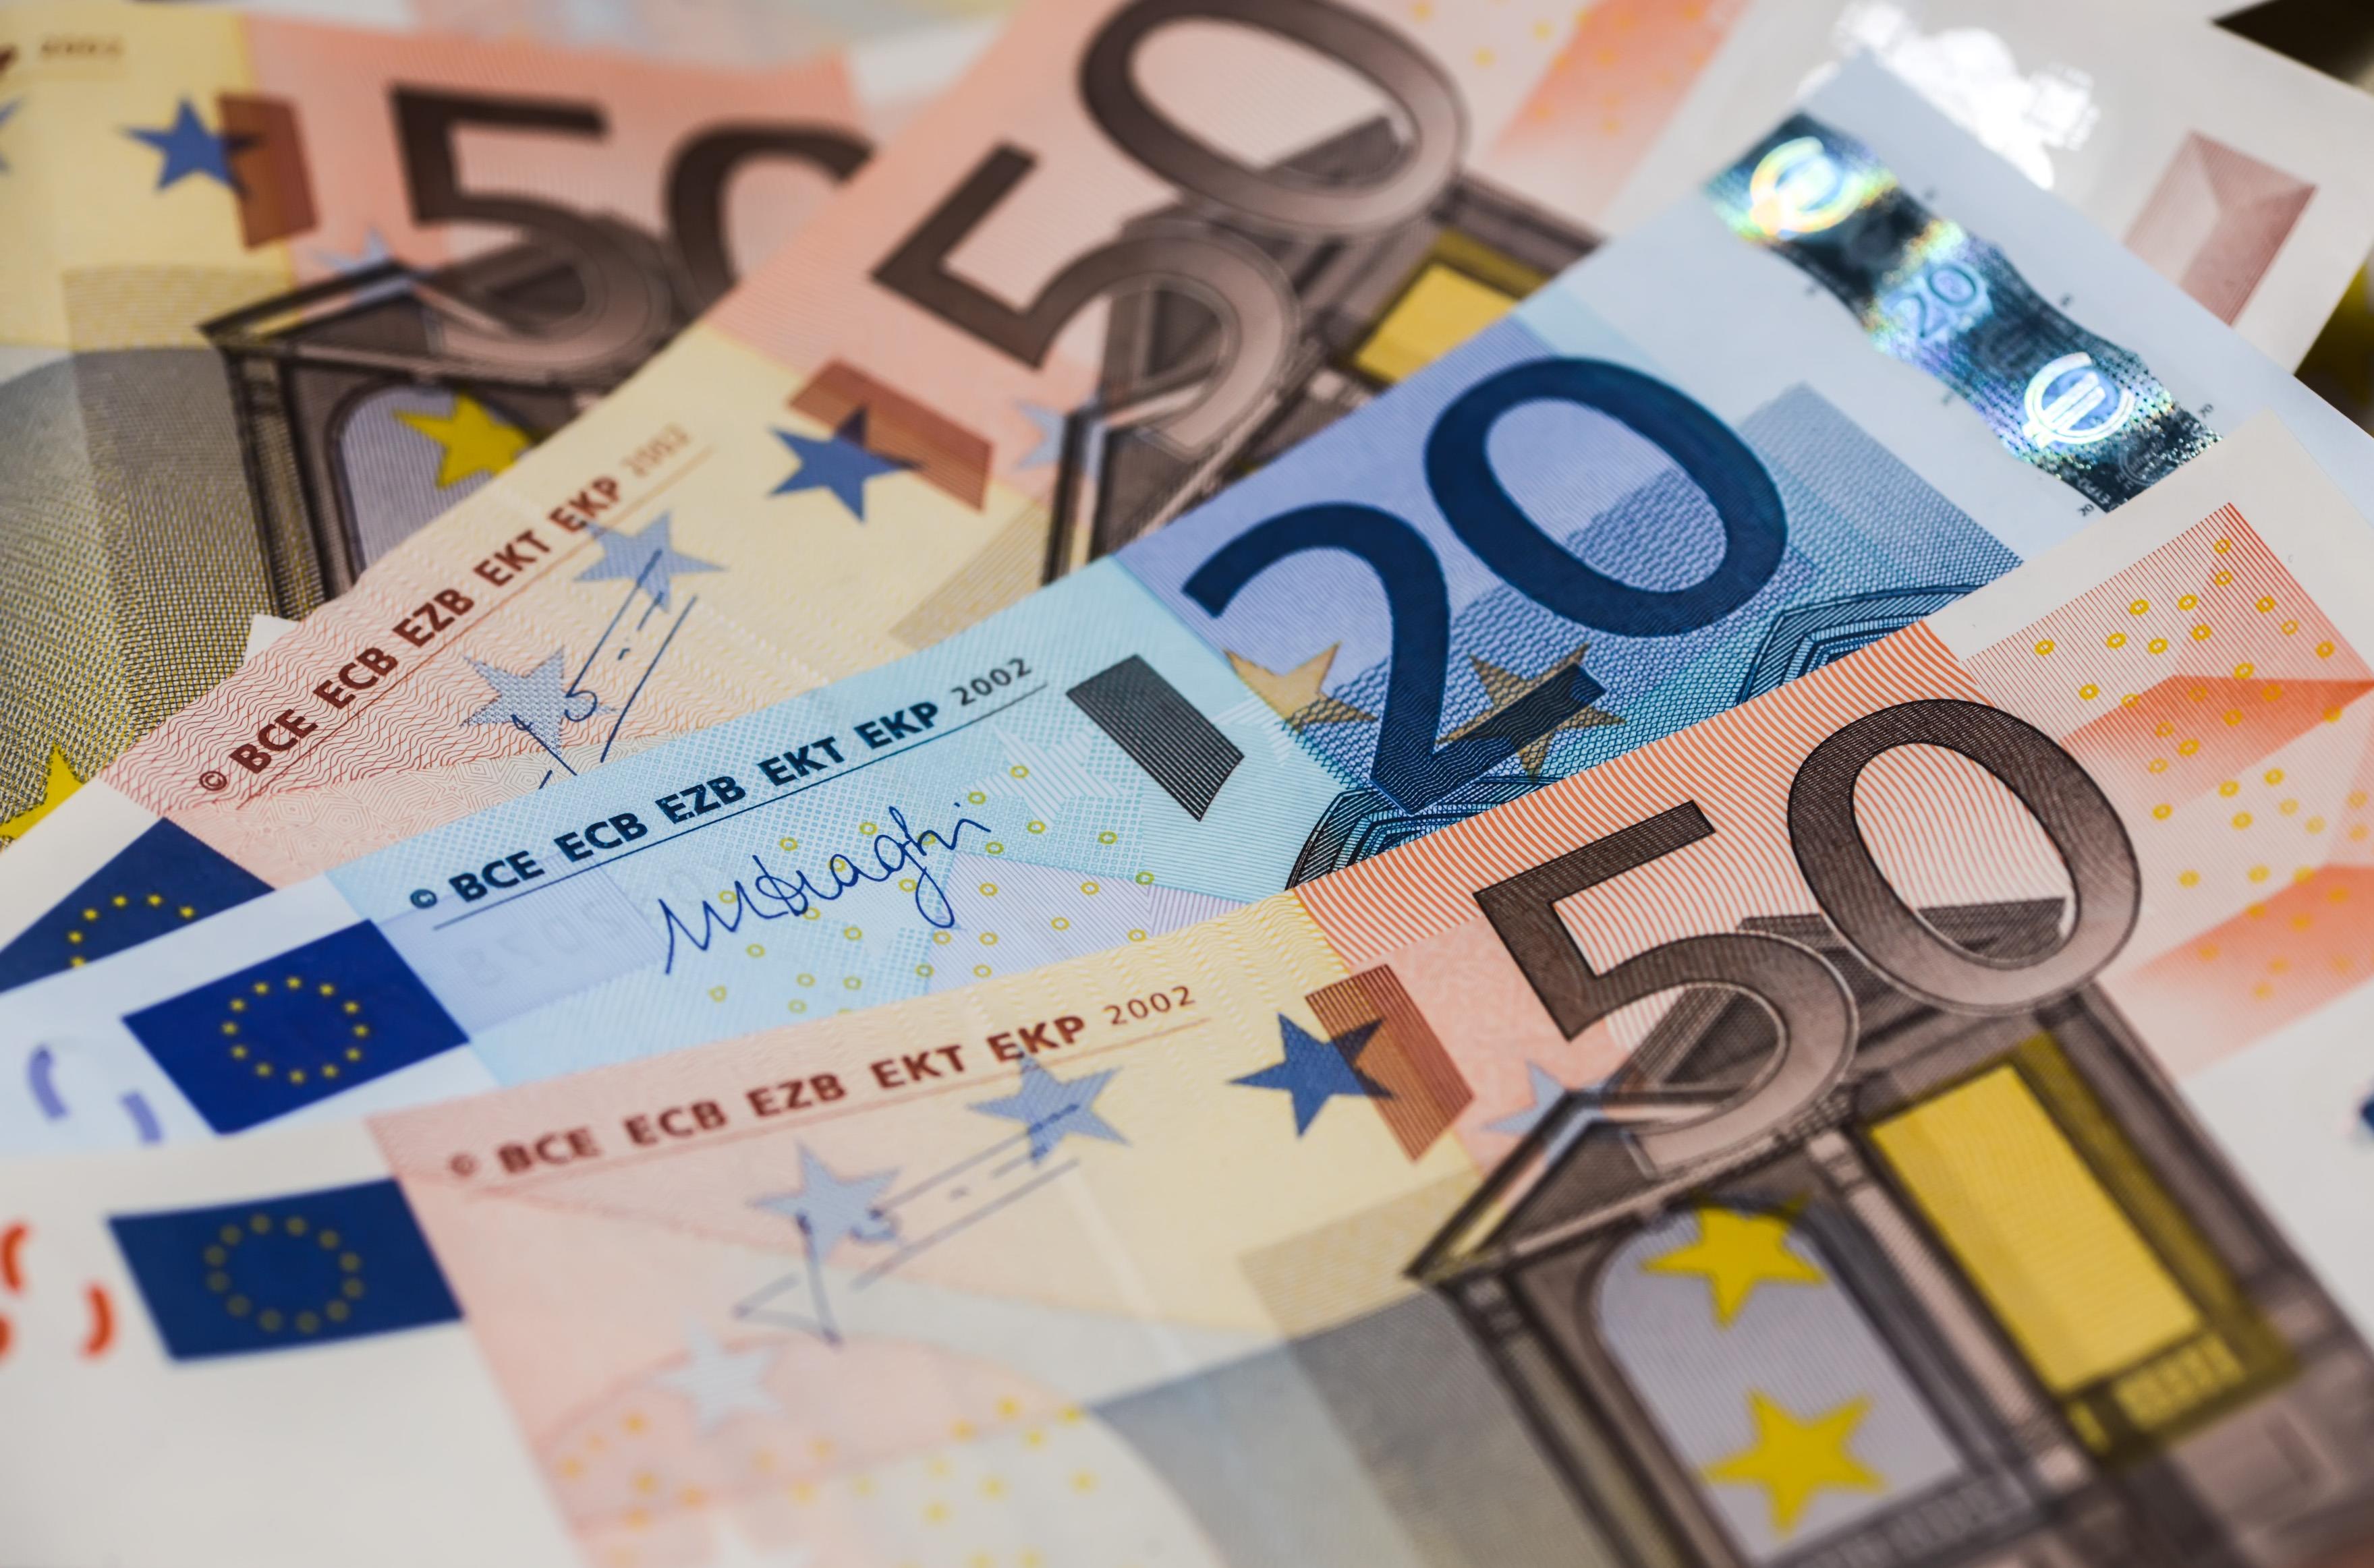 Suddeutsche Zeitung: “Greece to receive €2bn tranche in November”